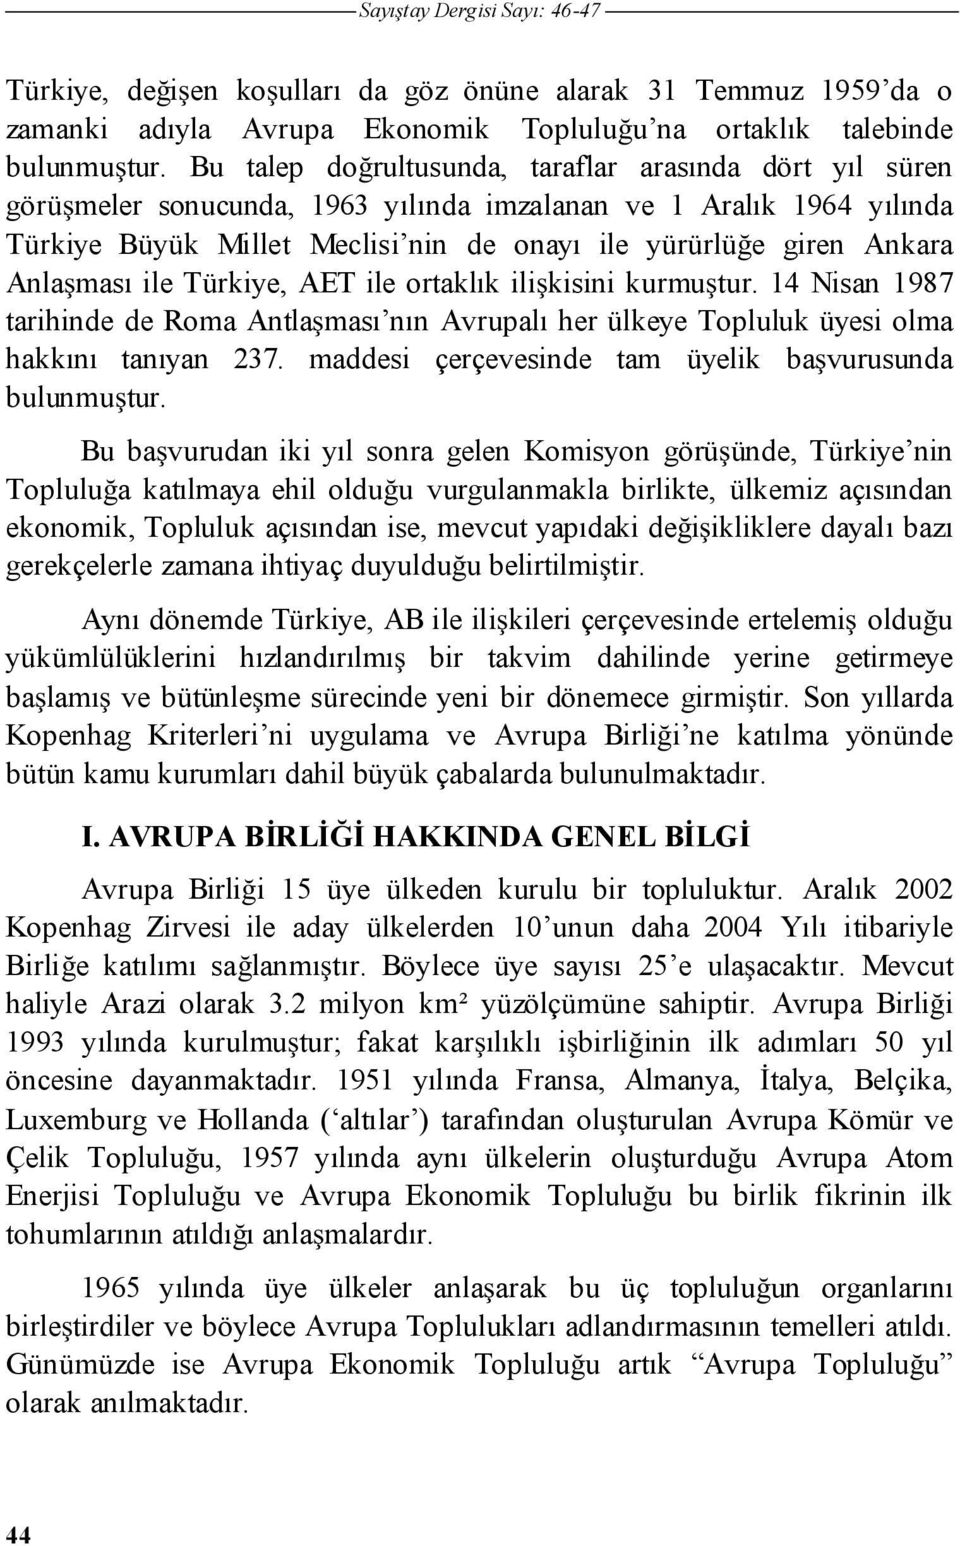 Anla ması ile Türkiye, AET ile ortaklık ili kisini kurmu tur. 14 Nisan 1987 tarihinde de Roma Antla ması nın Avrupalı her ülkeye Topluluk üyesi olma hakkını tanıyan 237.